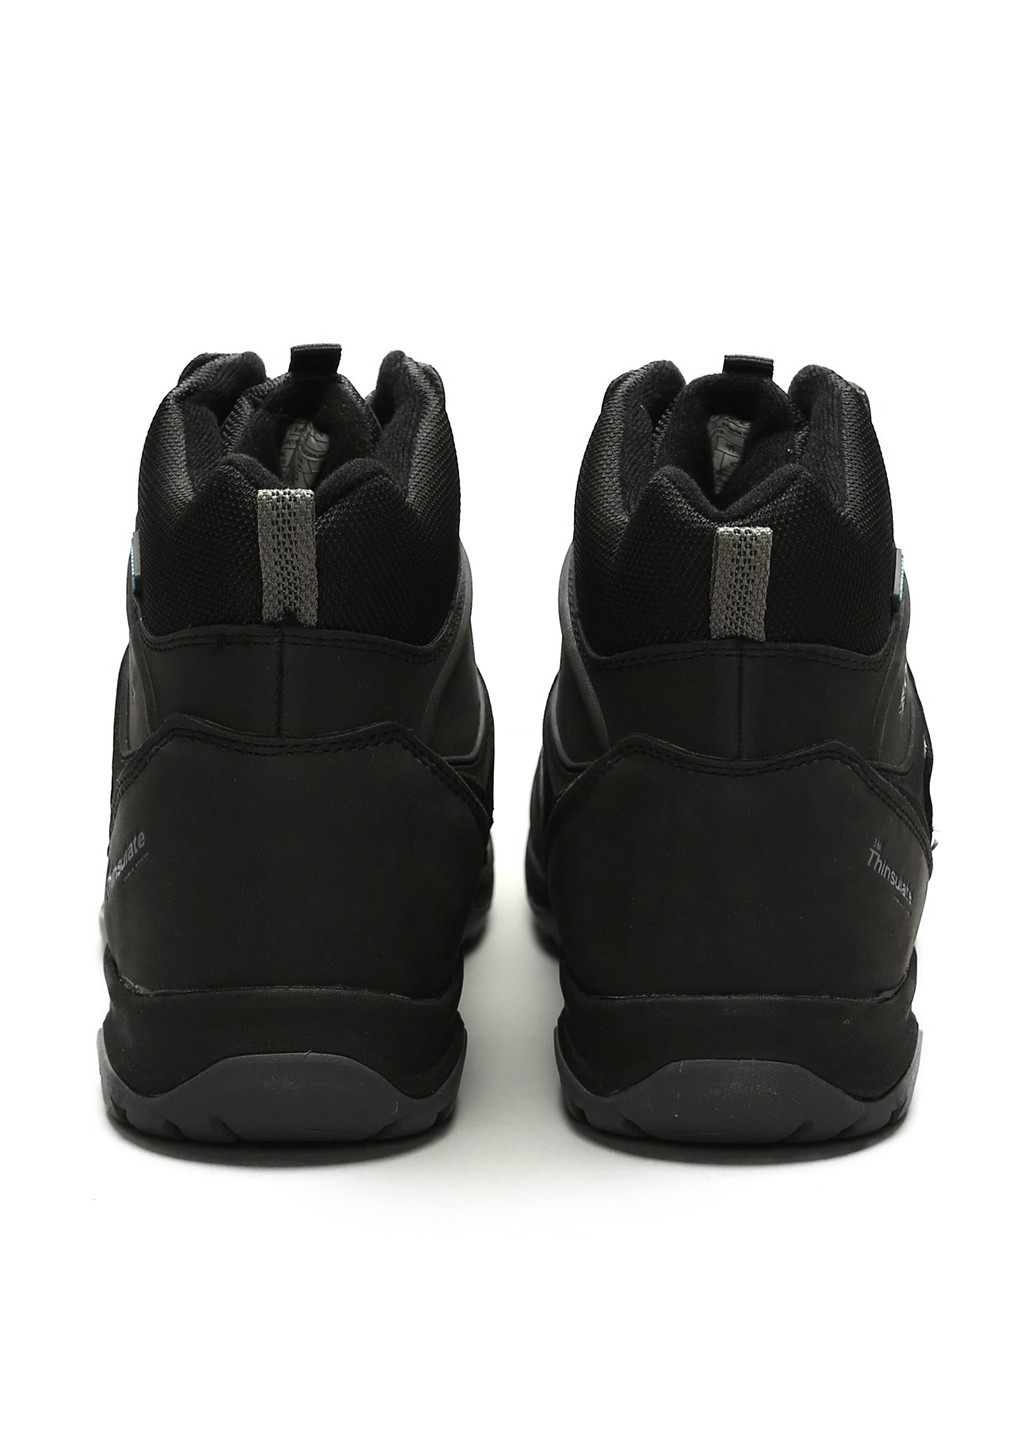 Черные зимние ботинки Karrimor